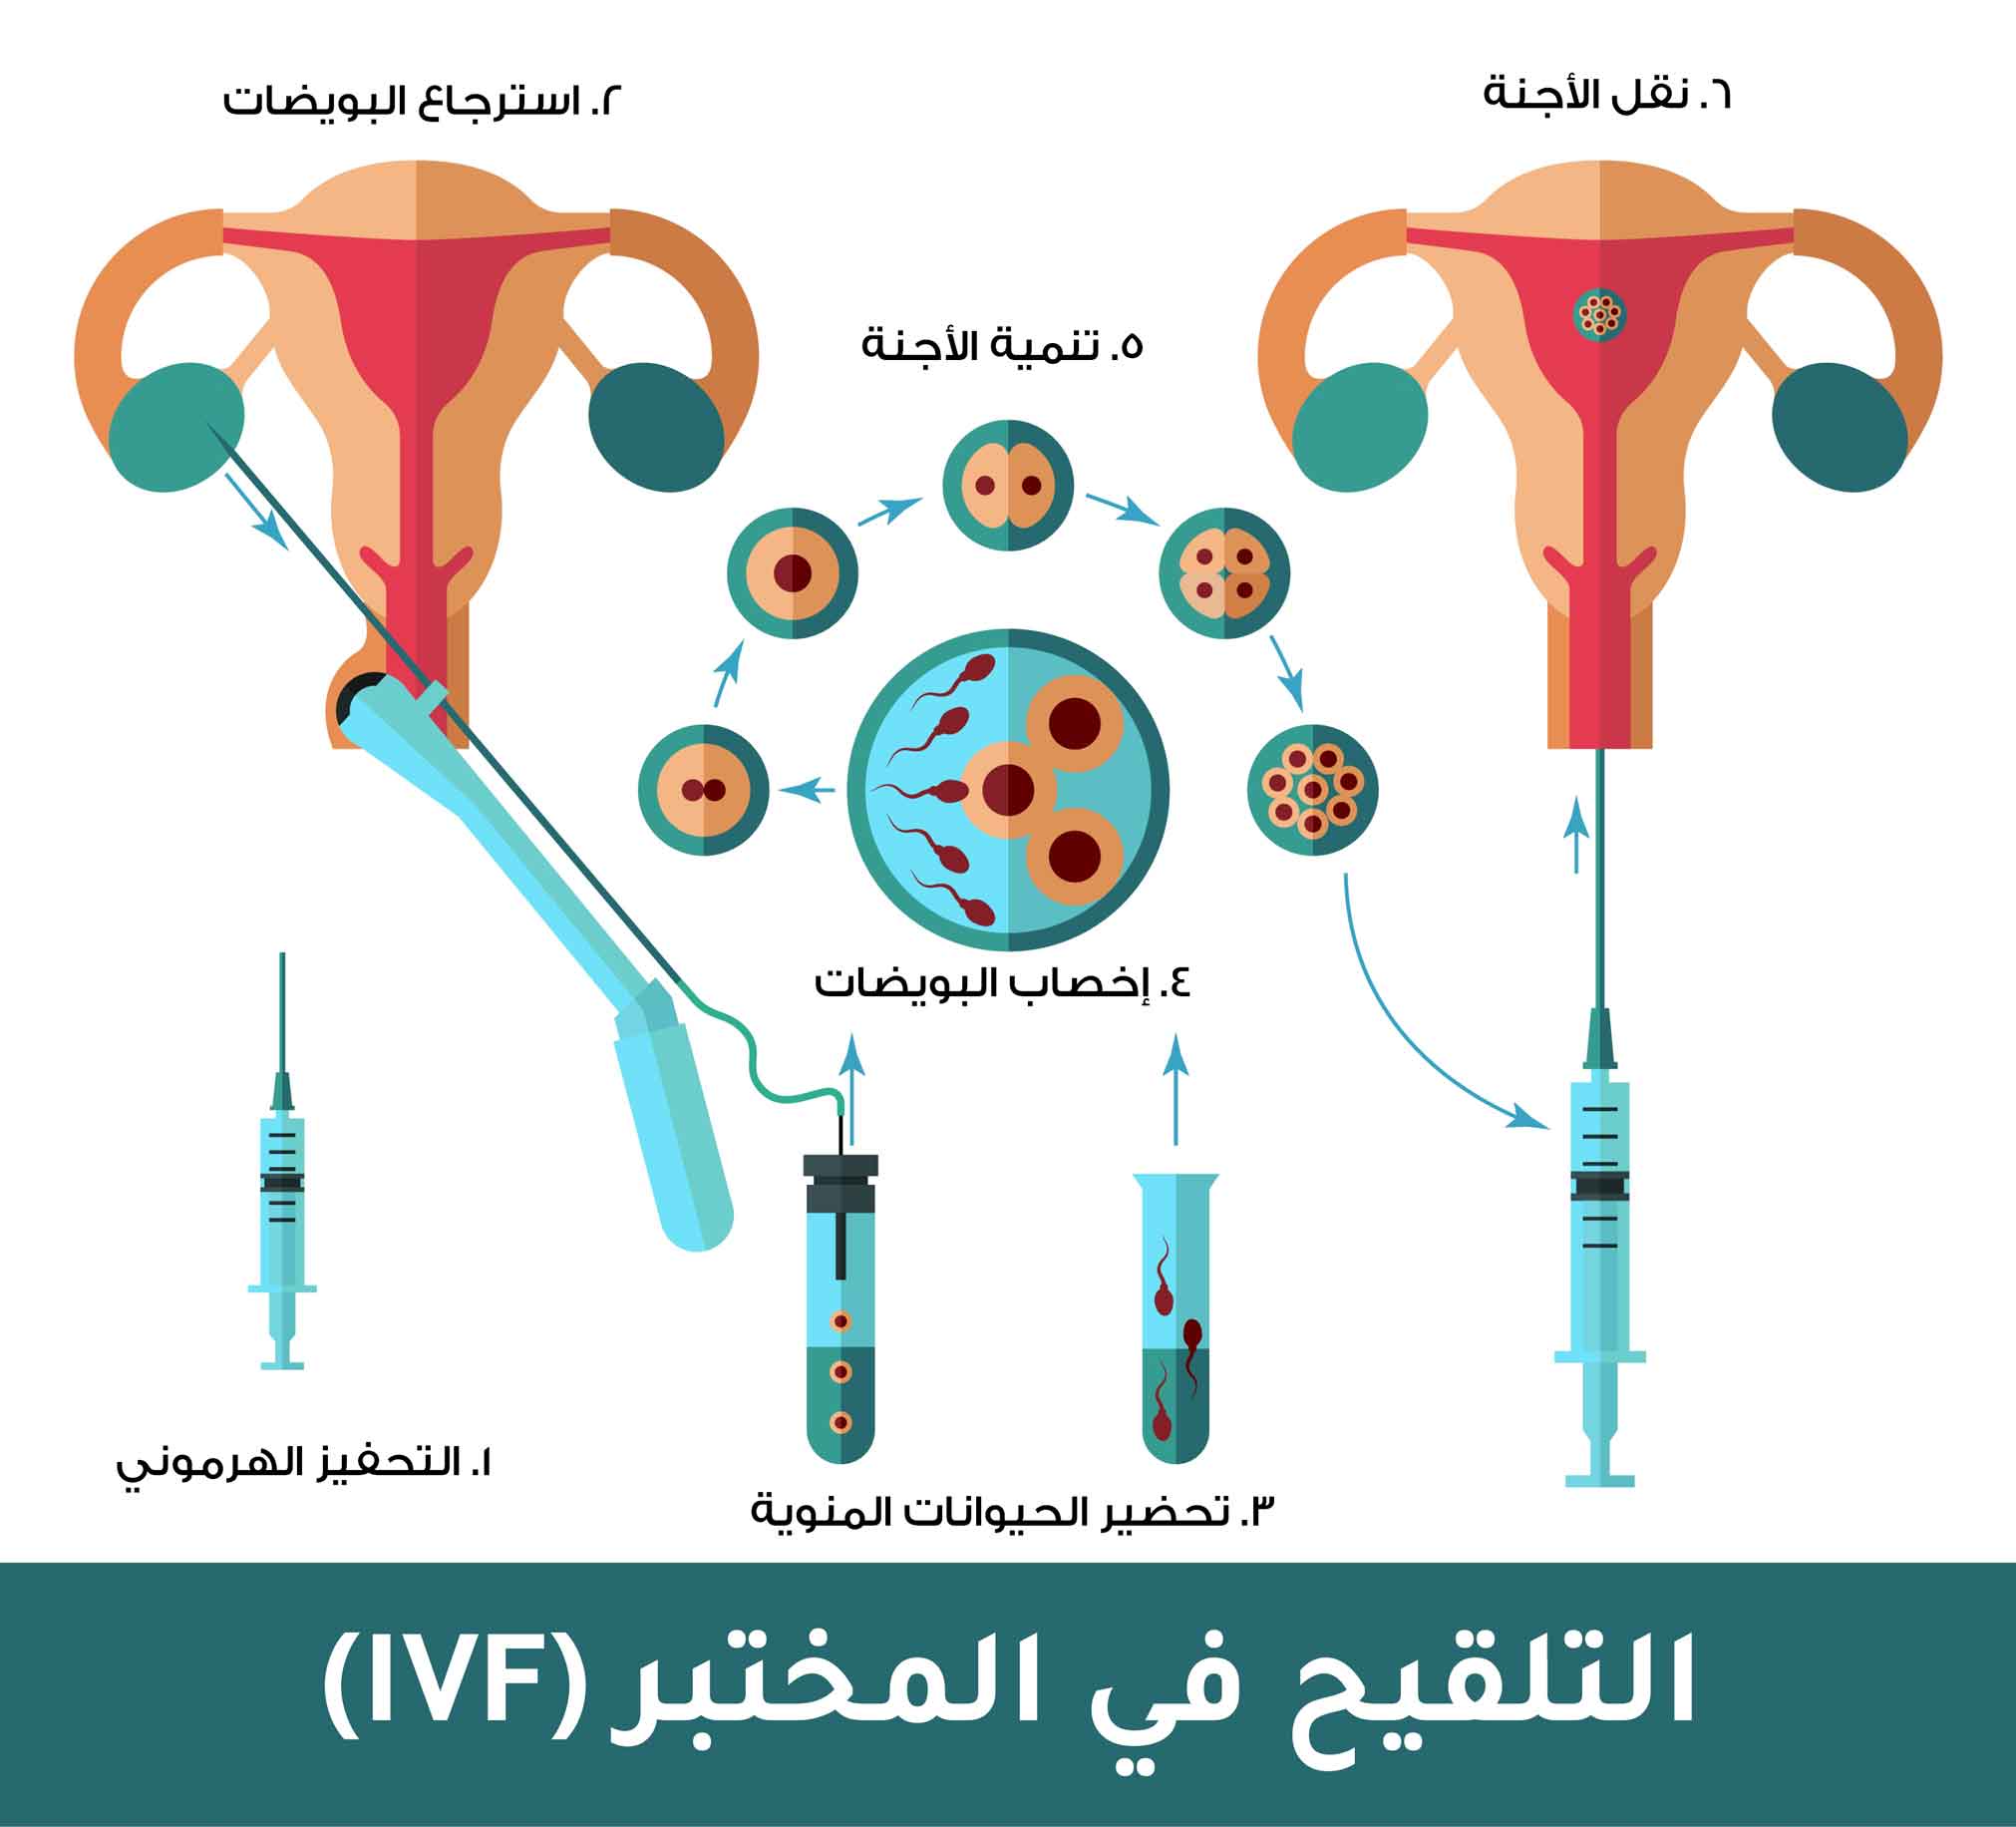 عملية التلقيح في المختبر (IVF)